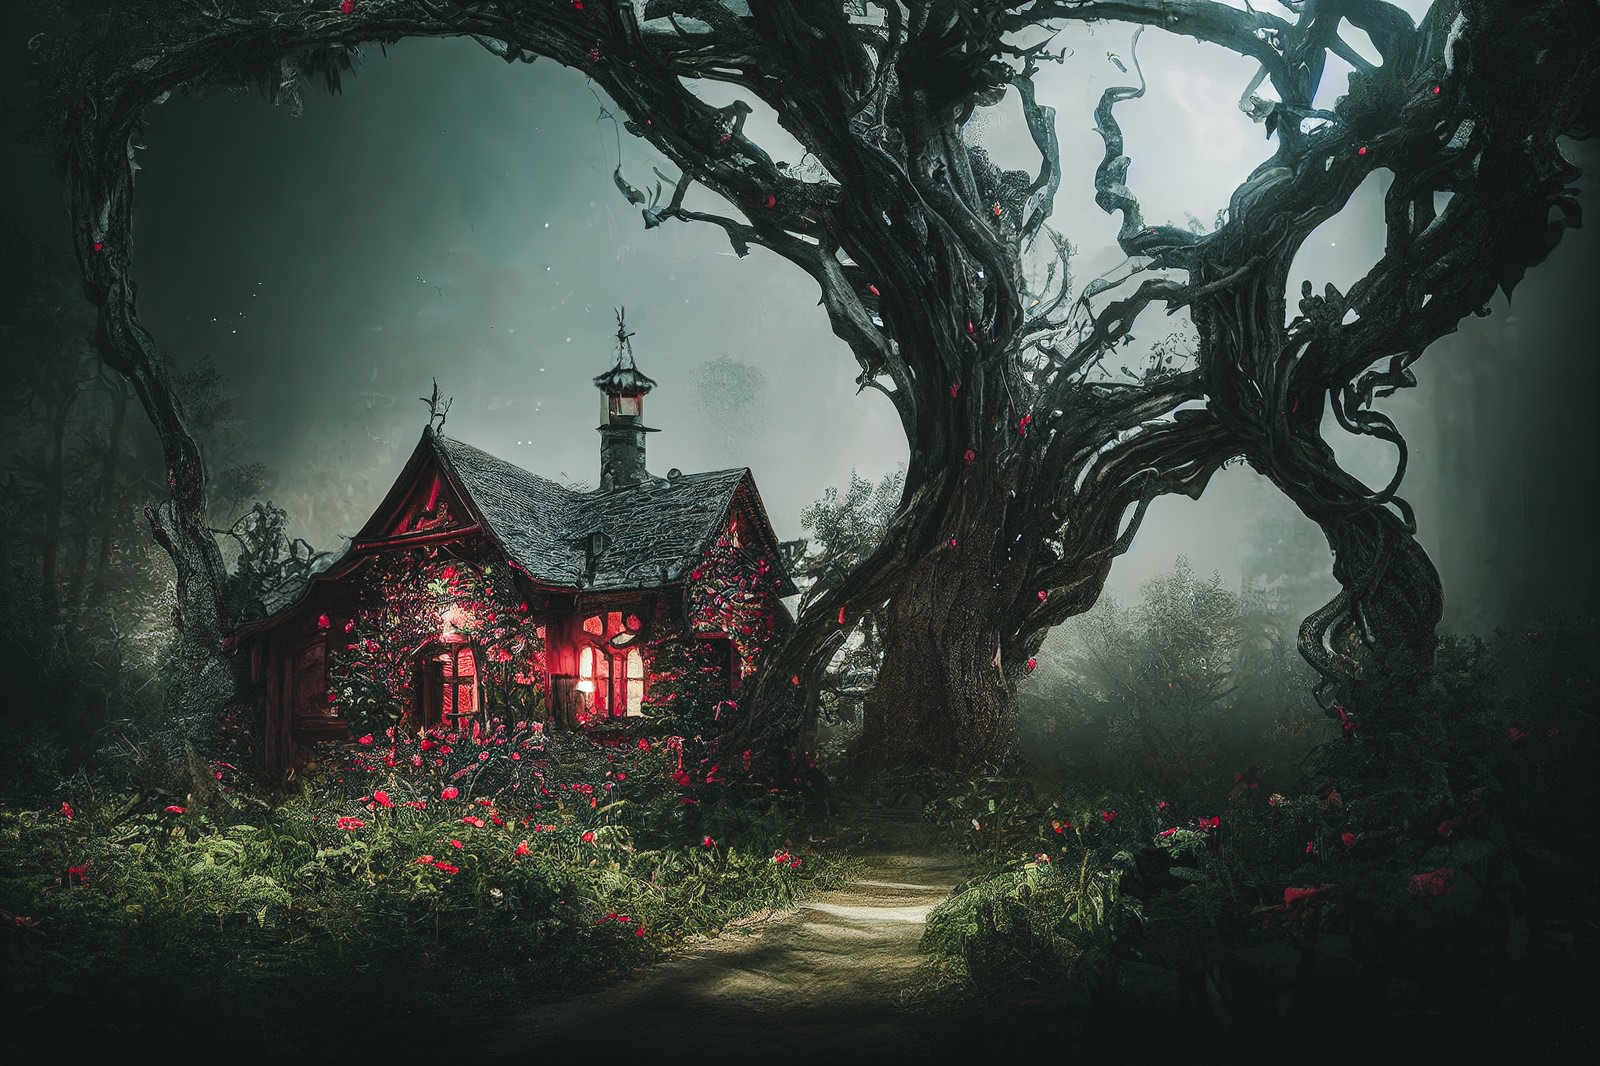 「森を守る巨木と魔女の家 | フリー素材のぱくたそ」の写真